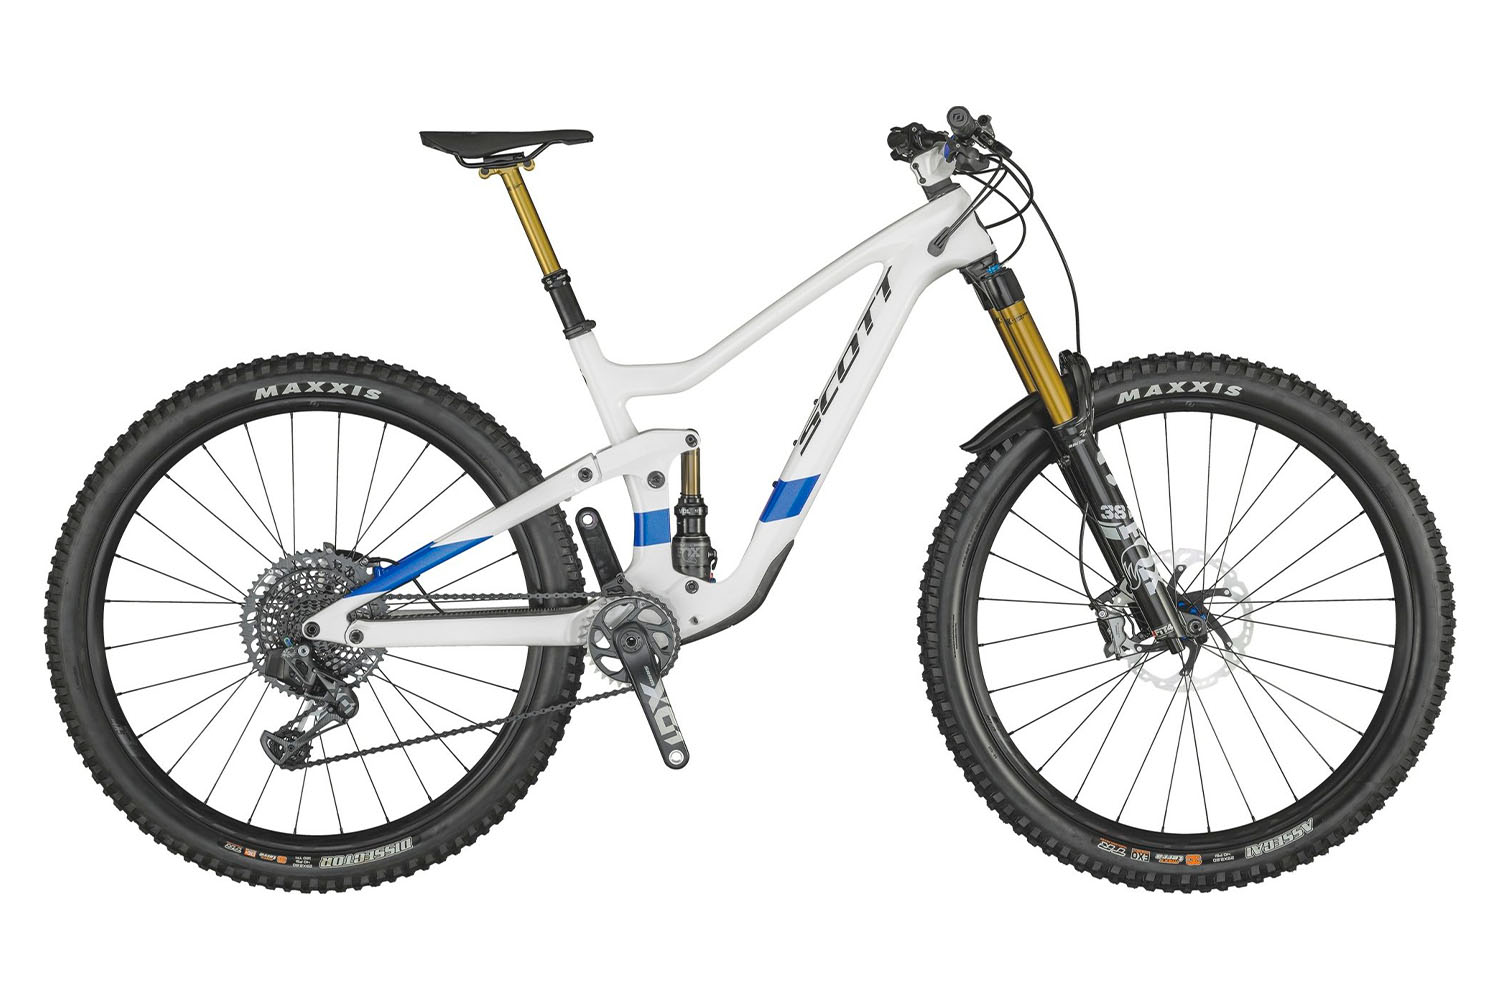  Отзывы о Двухподвесном велосипеде Scott Ransom 900 Tuned AXS (2021) 2021